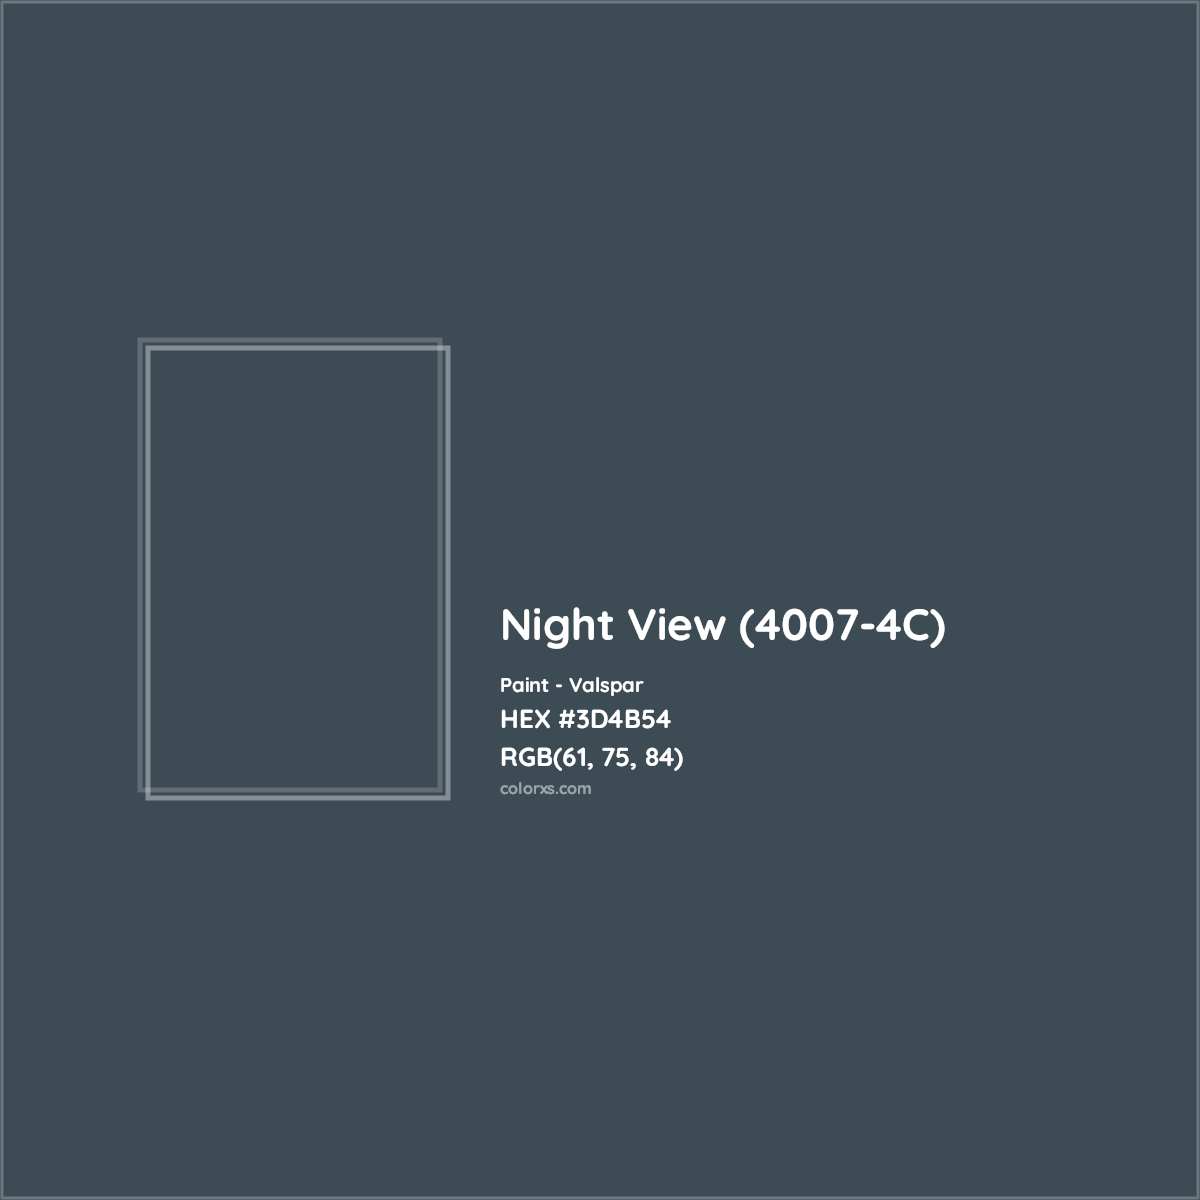 HEX #3D4B54 Night View (4007-4C) Paint Valspar - Color Code